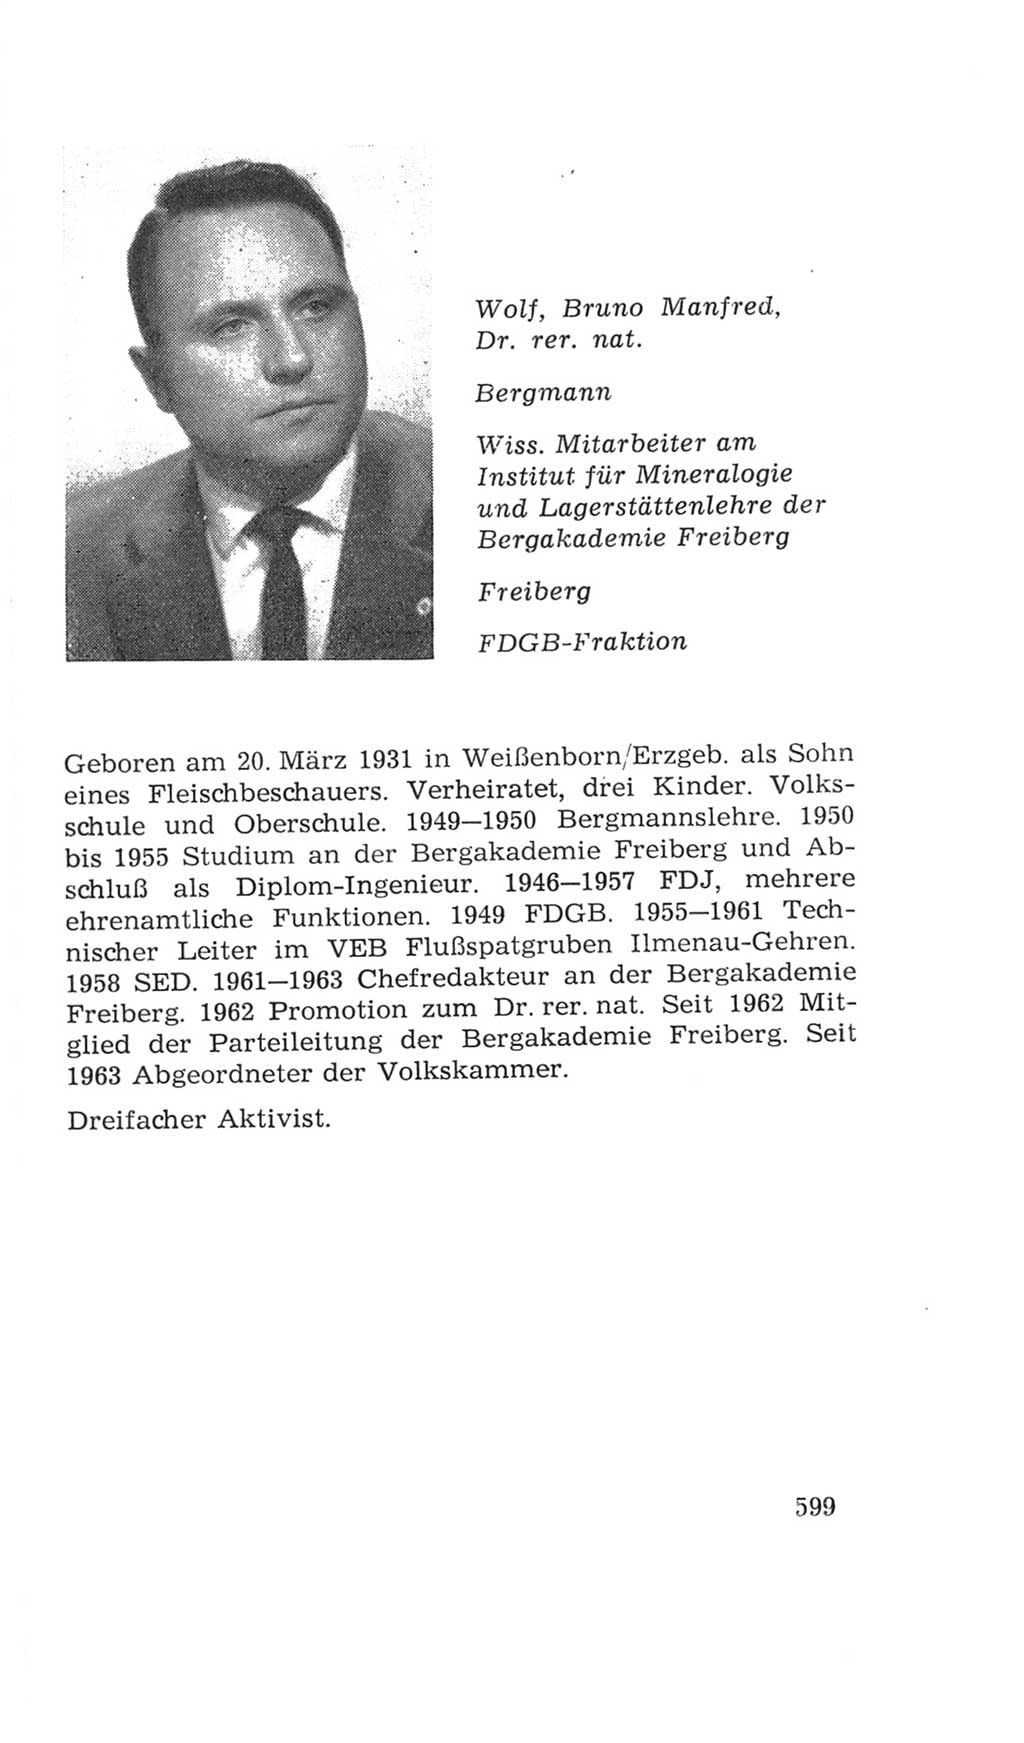 Volkskammer (VK) der Deutschen Demokratischen Republik (DDR), 4. Wahlperiode 1963-1967, Seite 599 (VK. DDR 4. WP. 1963-1967, S. 599)